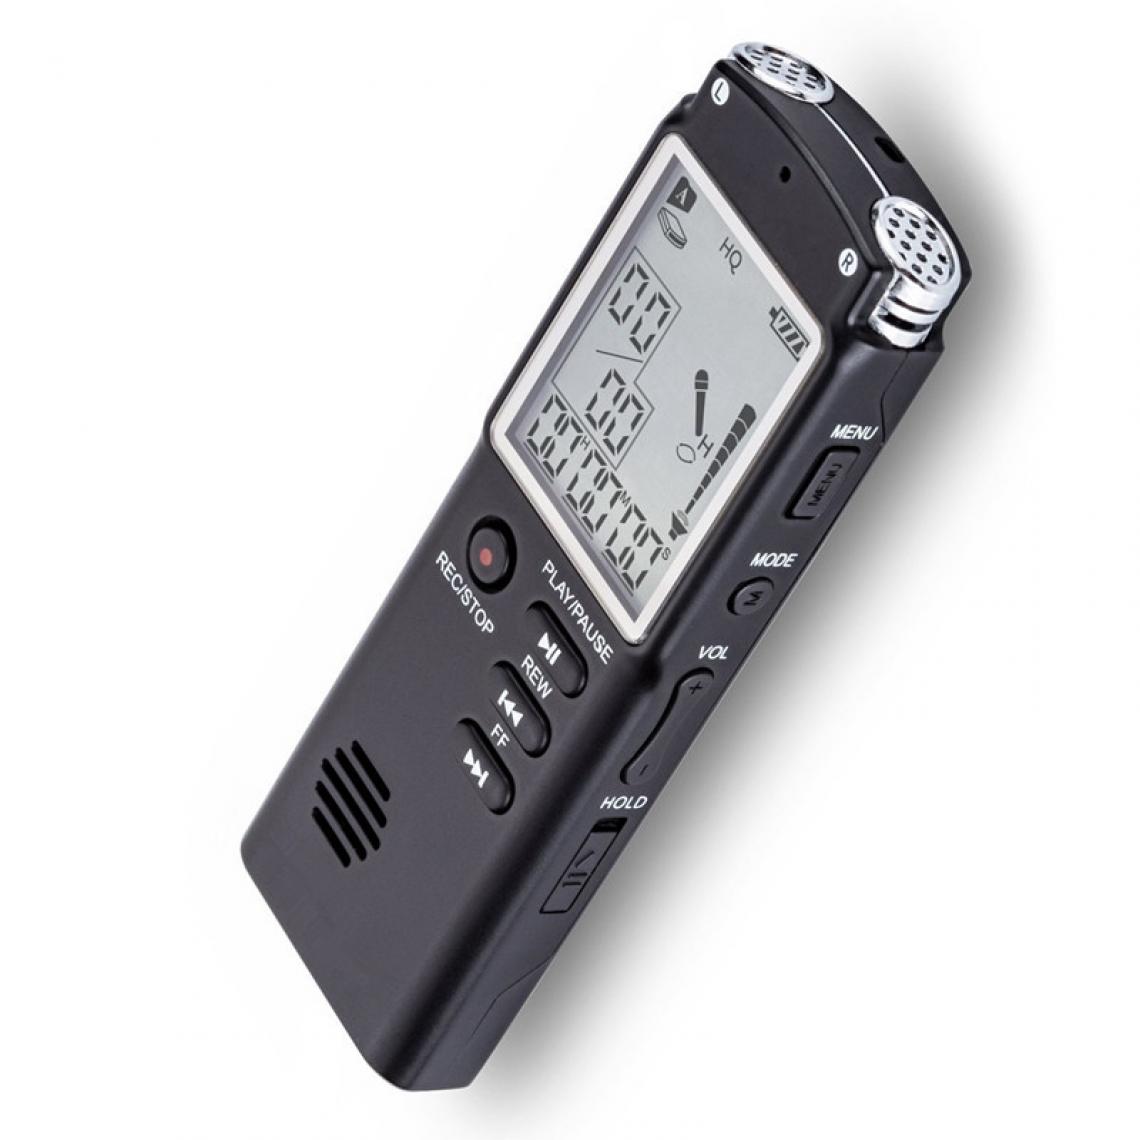 Universal - Magnétophone portable 8G, magnétophone USB, magnétophone audio numérique, magnétoscope, WAV, lecteur MP3 - Enregistreur audio numérique